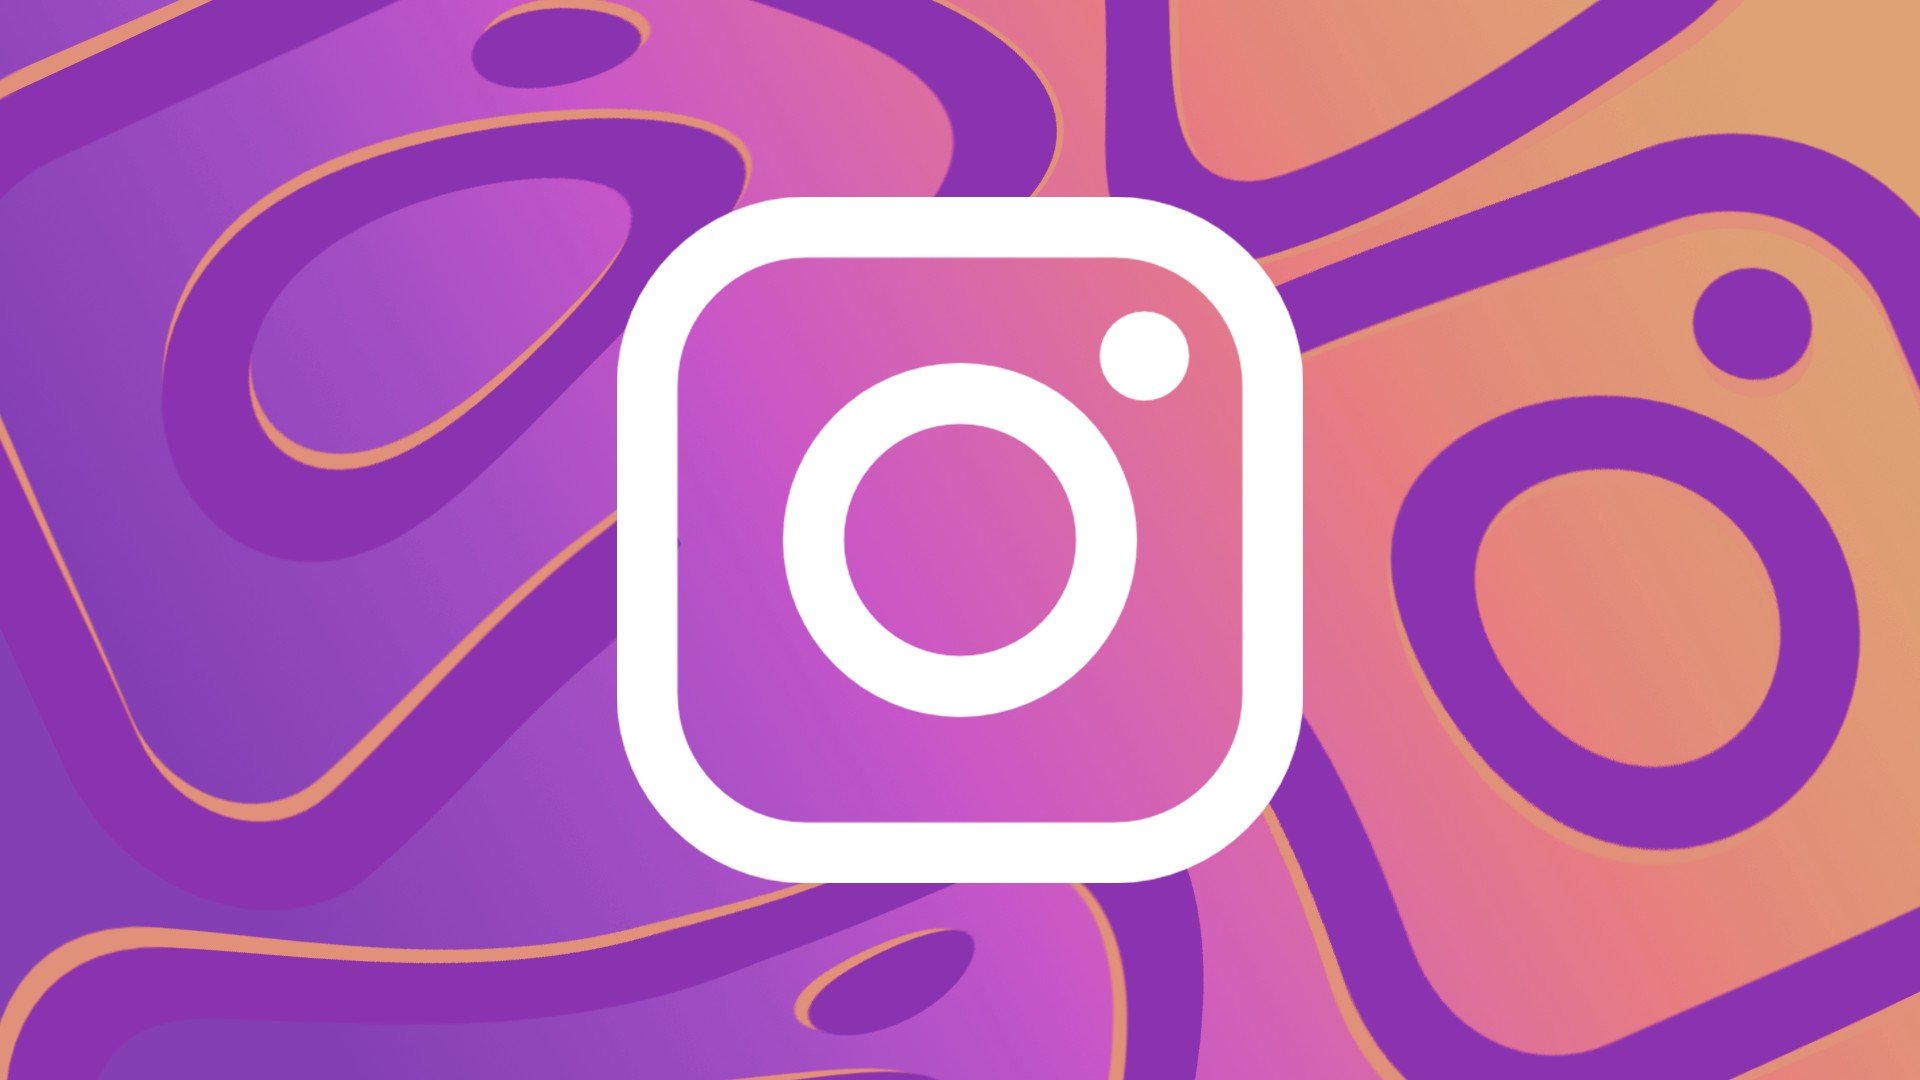 Aprenda de uma vez por todas como postar Gifs no feed e nos Stories do  Instagram